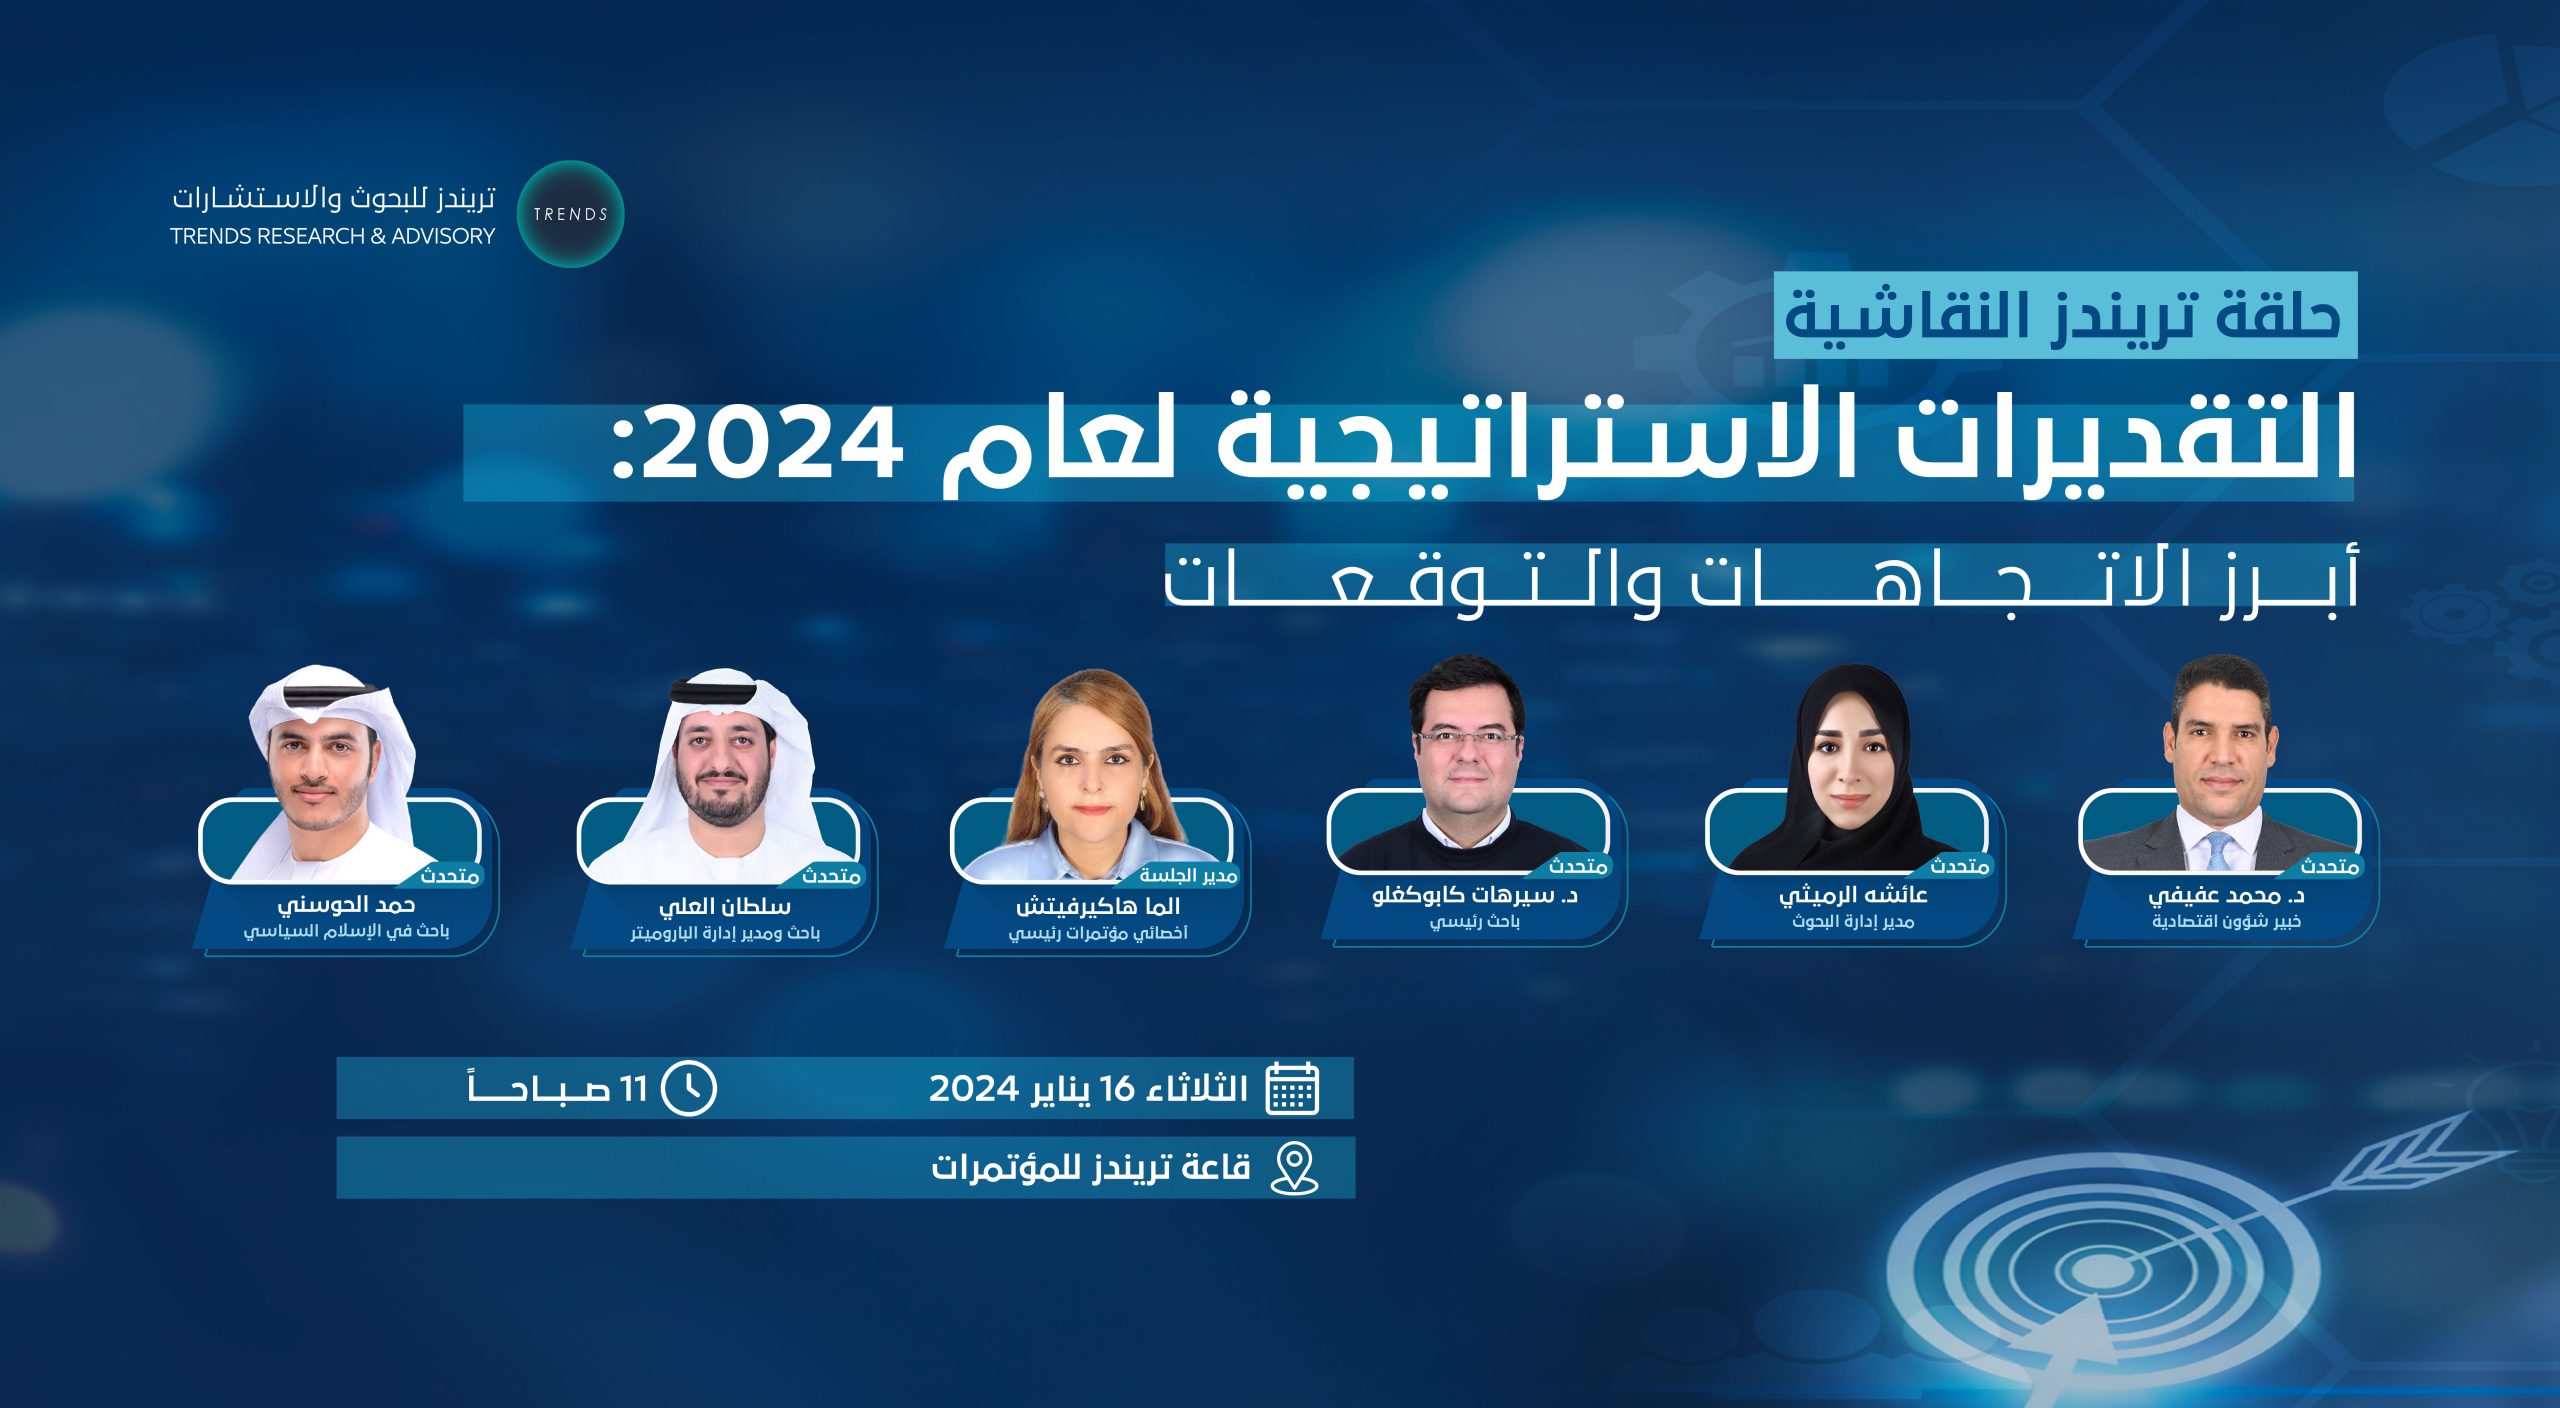 التقديرات الاستراتيجية لعام 2024: أبرز الاتجاهات والتوقعات